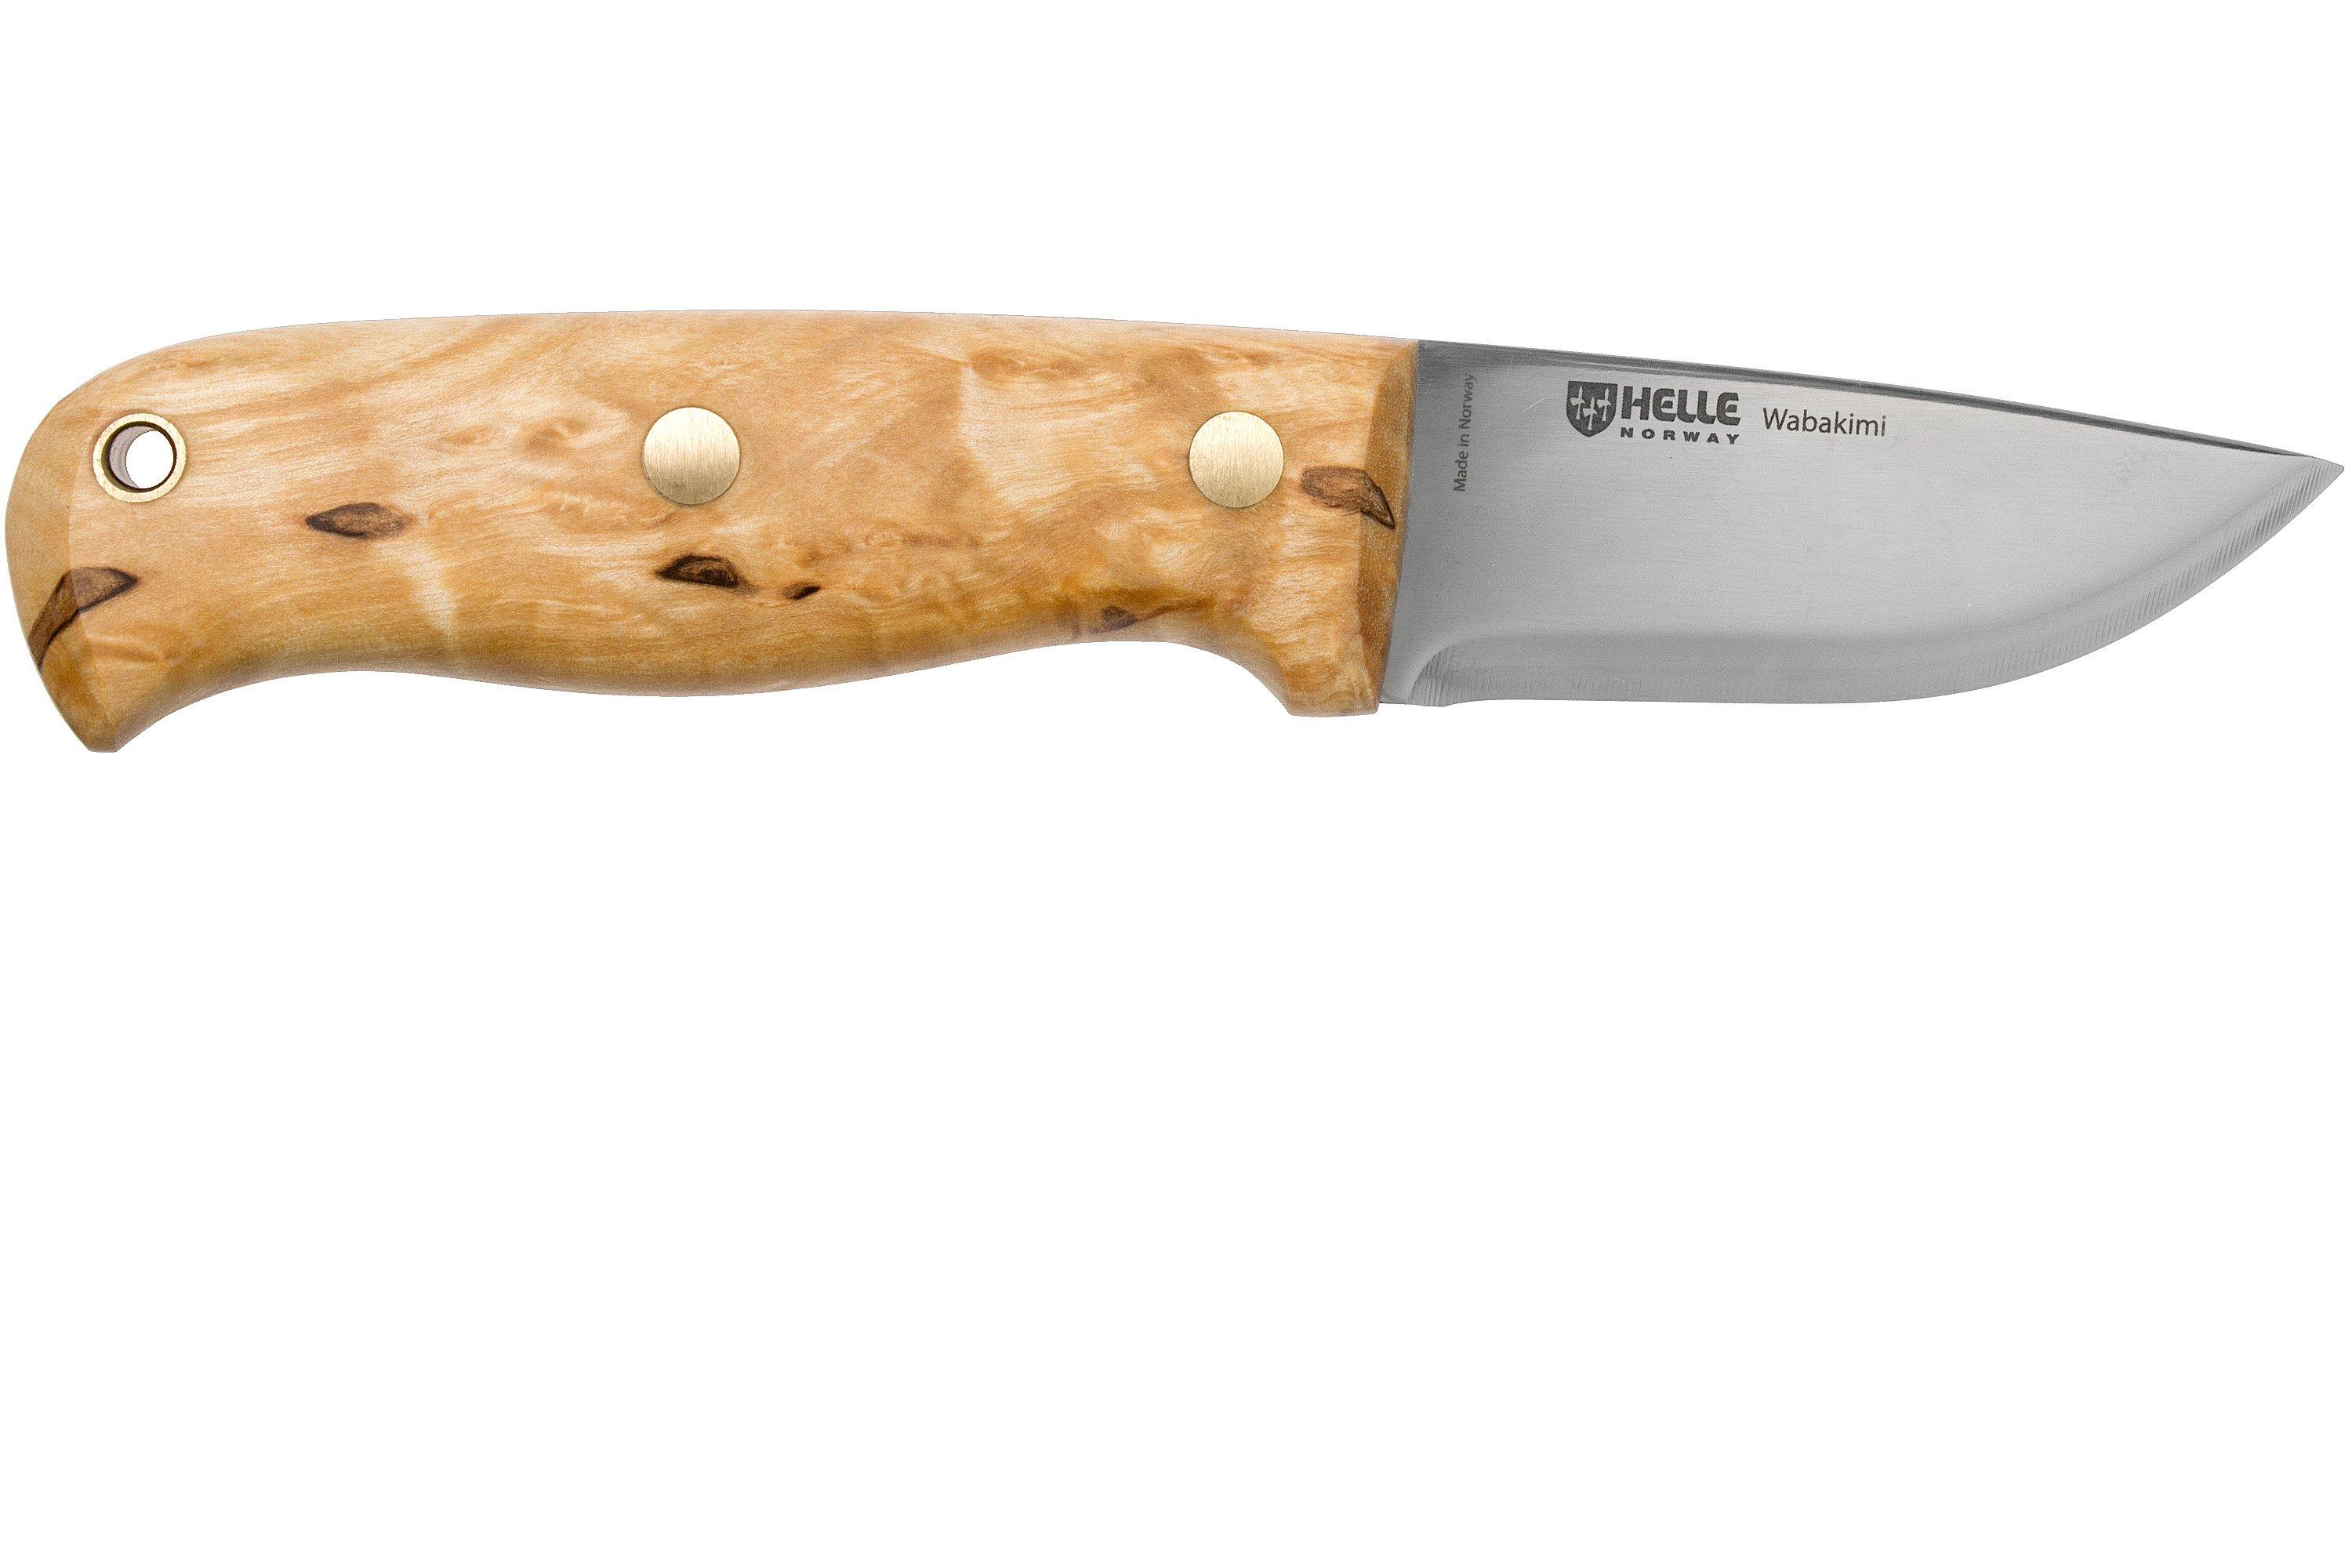 Helle Wabakimi 630 bushcraft knife, Les Stroud design